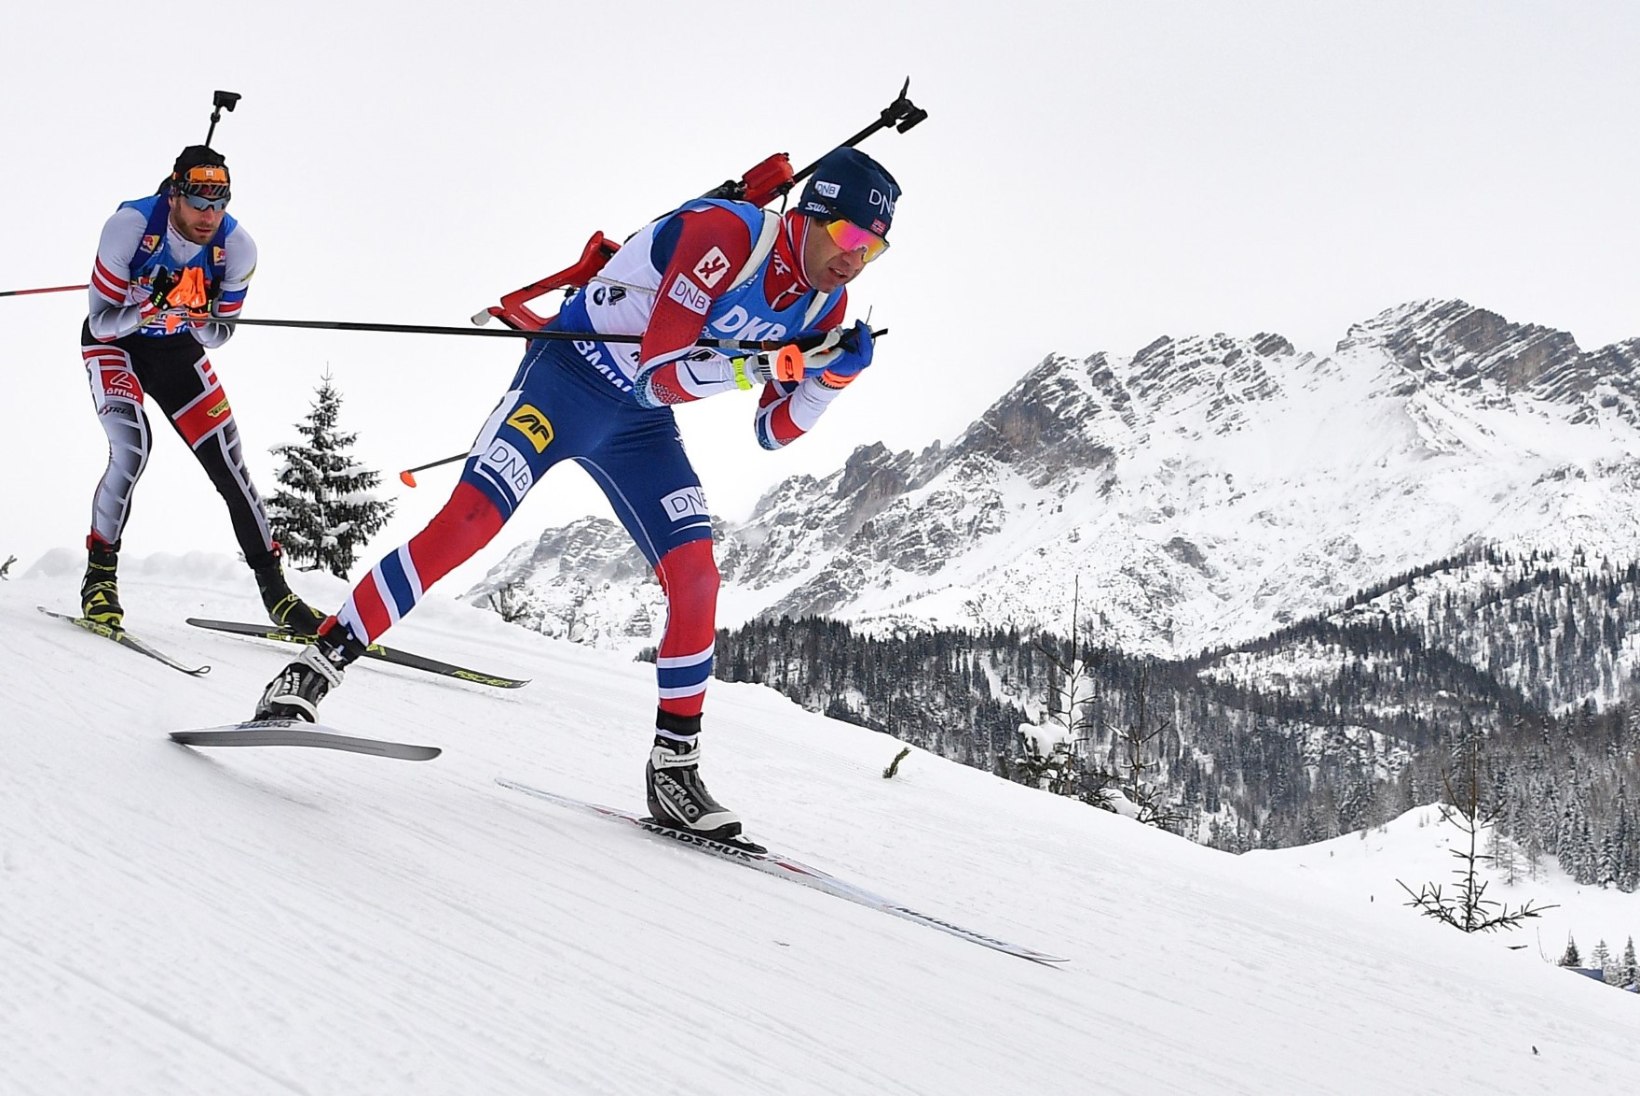 Tõehetk on lähedal: kas olümpia toimub legendaarse Ole Einar Björndalenita?